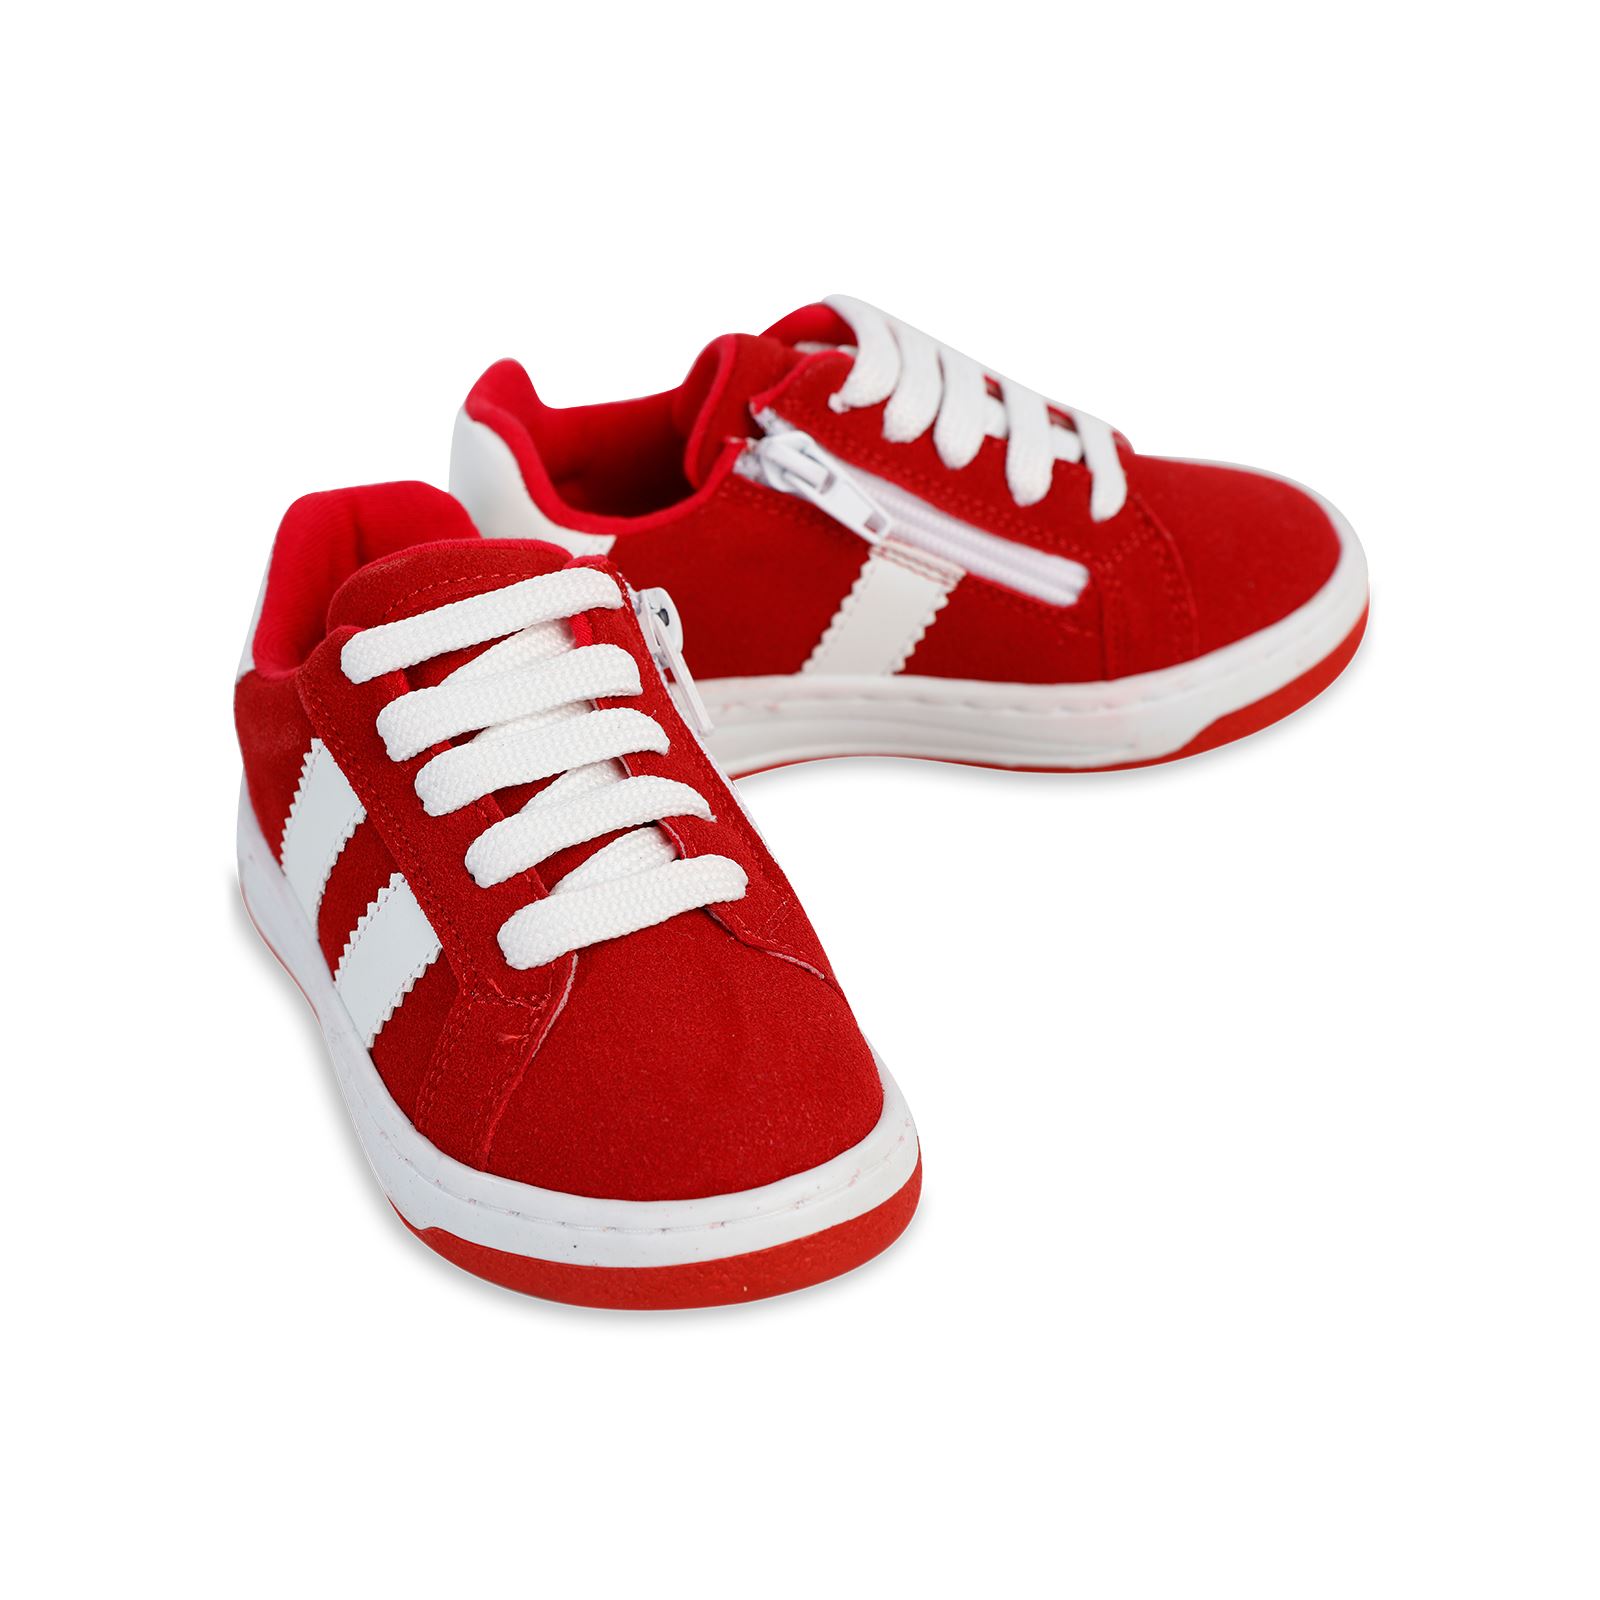 Civil Erkek Çocuk Spor Ayakkabı 26-30 Numara Kırmızı